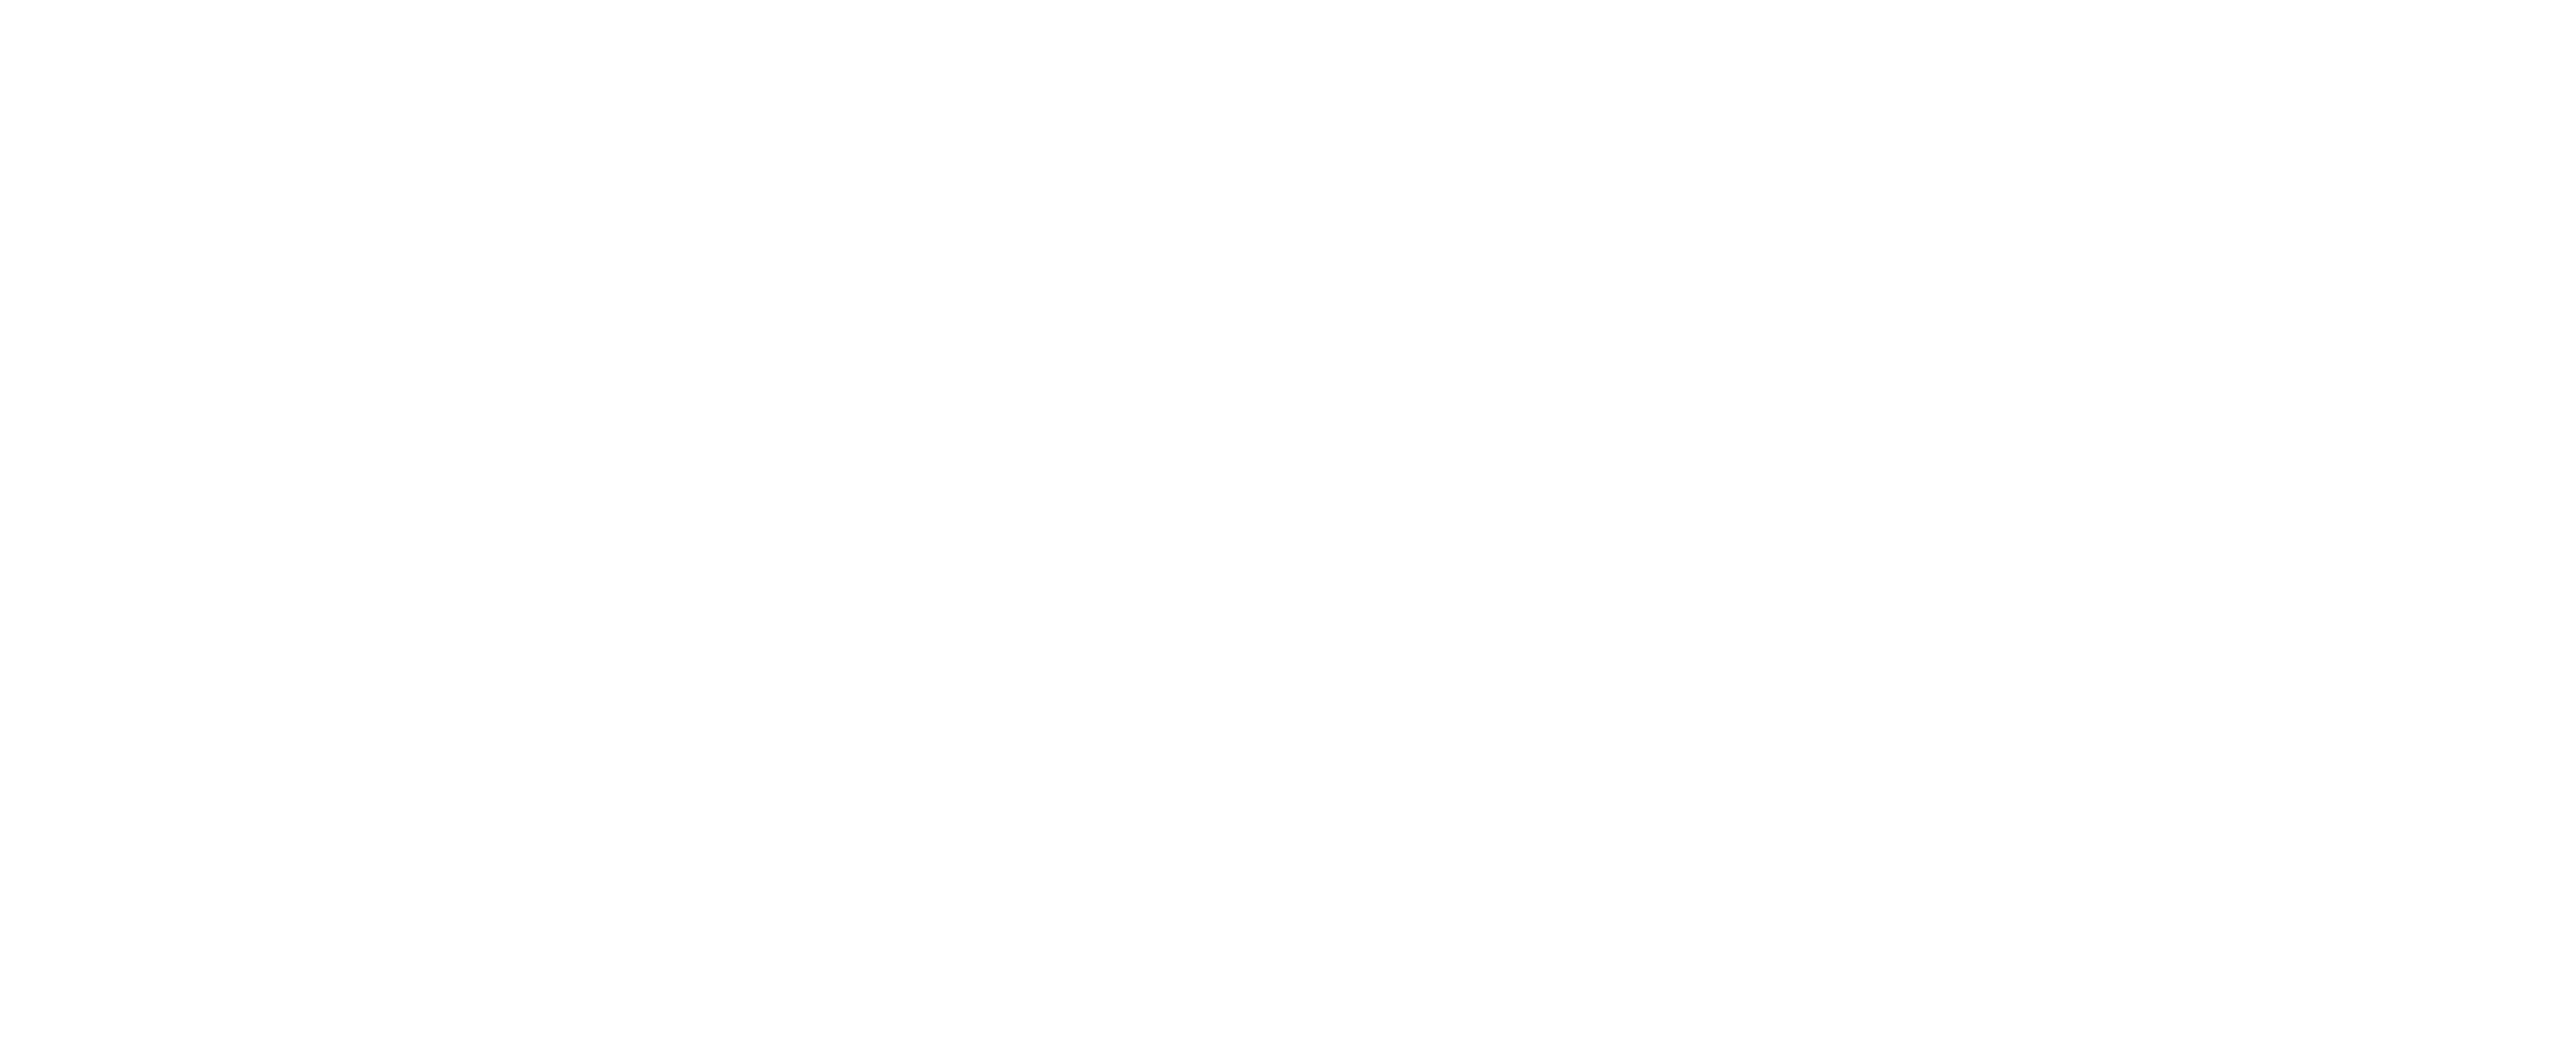 Google ChromeOS kopen?